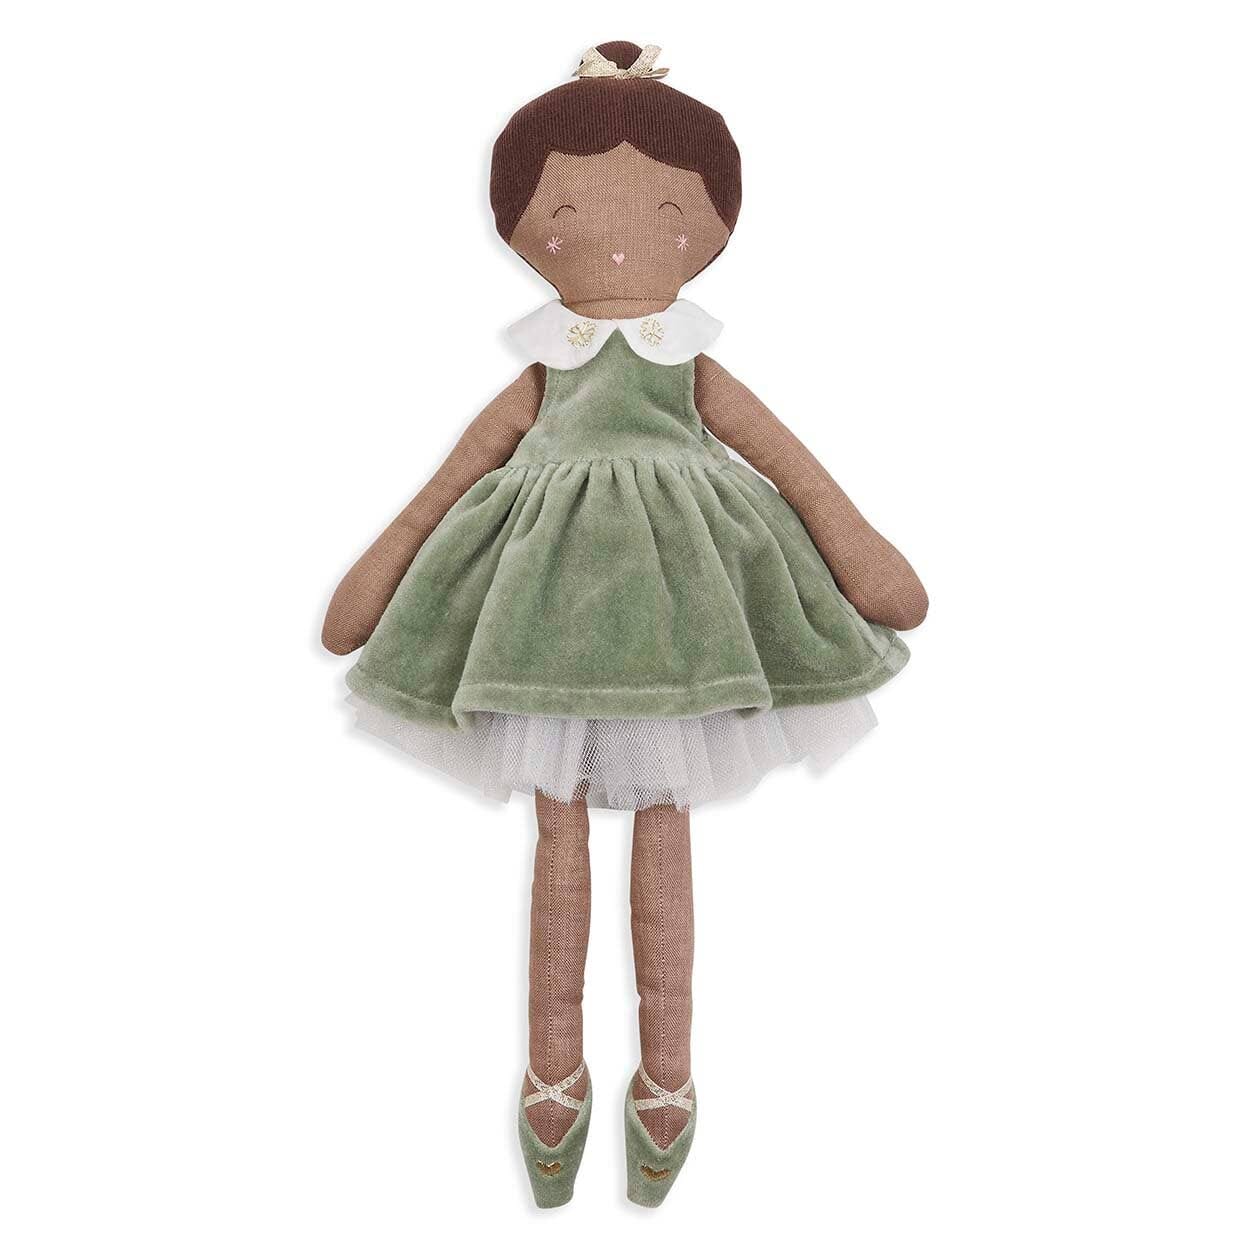 Ballerina Doll - Nutcracker Small Toy Avery Row 